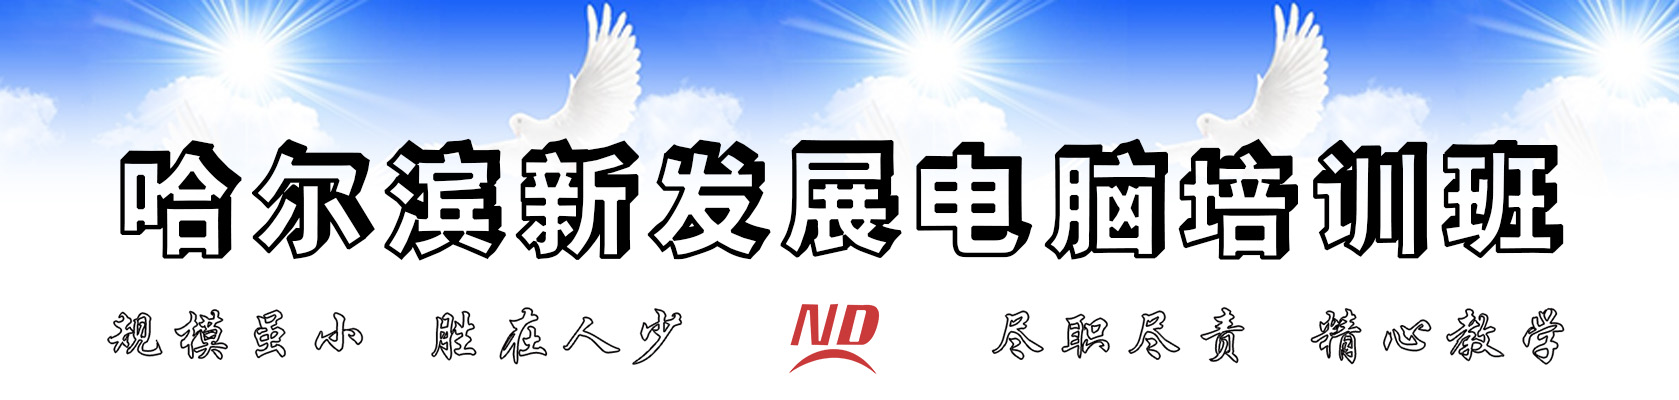 哈尔滨佐艺电脑培训班速成班logo图片展示